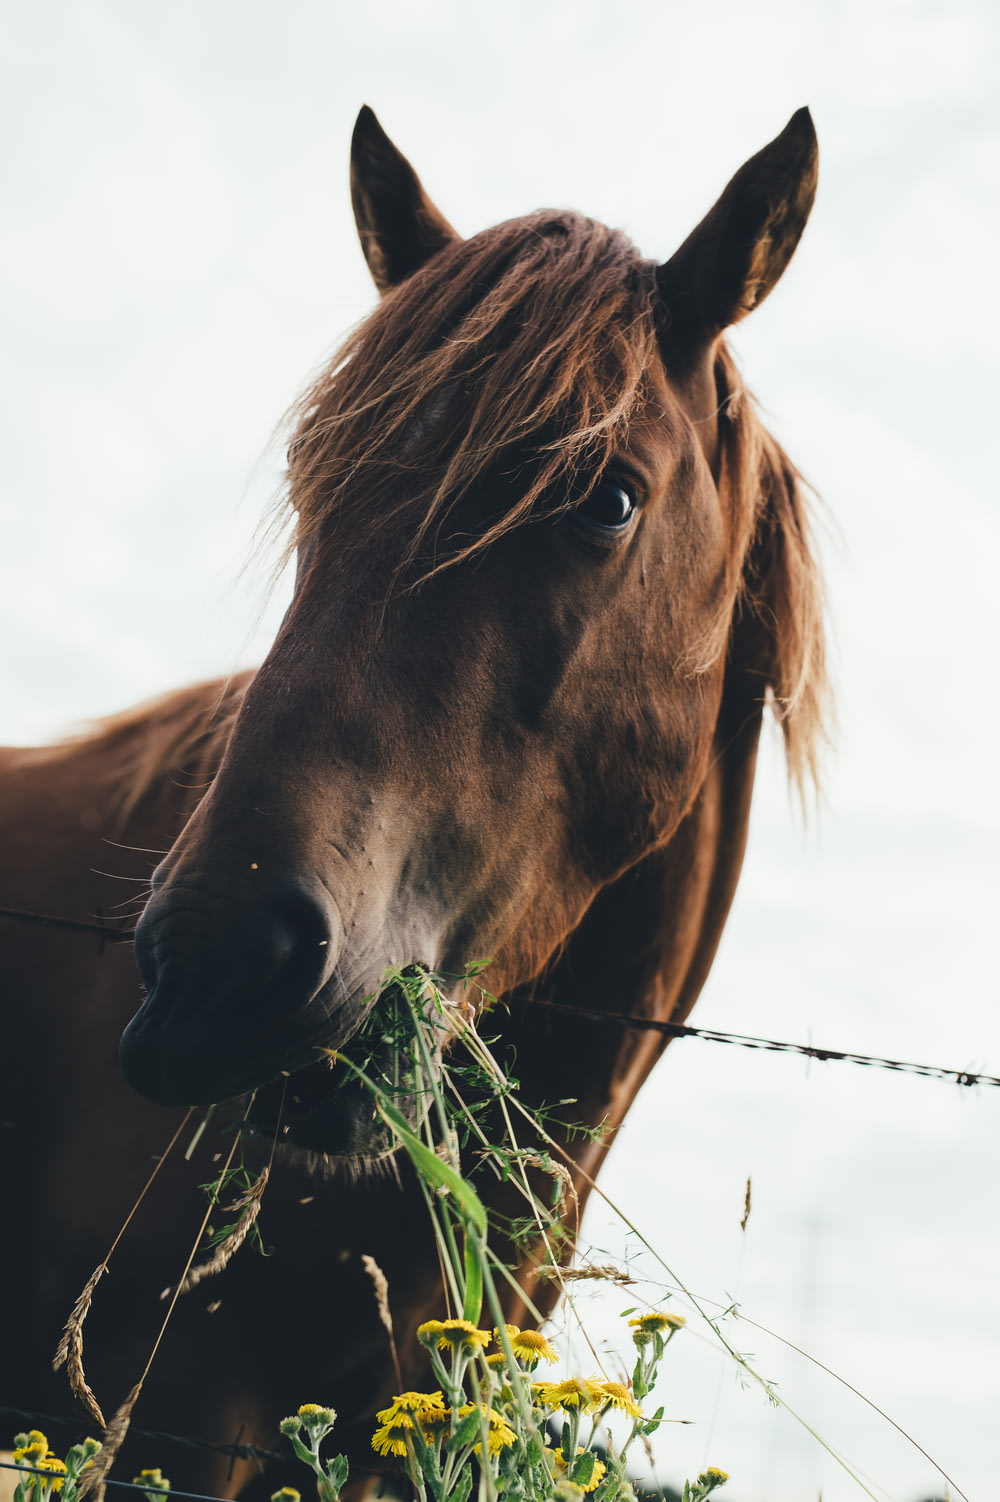 cavalo marrom comendo grama durante o céu nublado